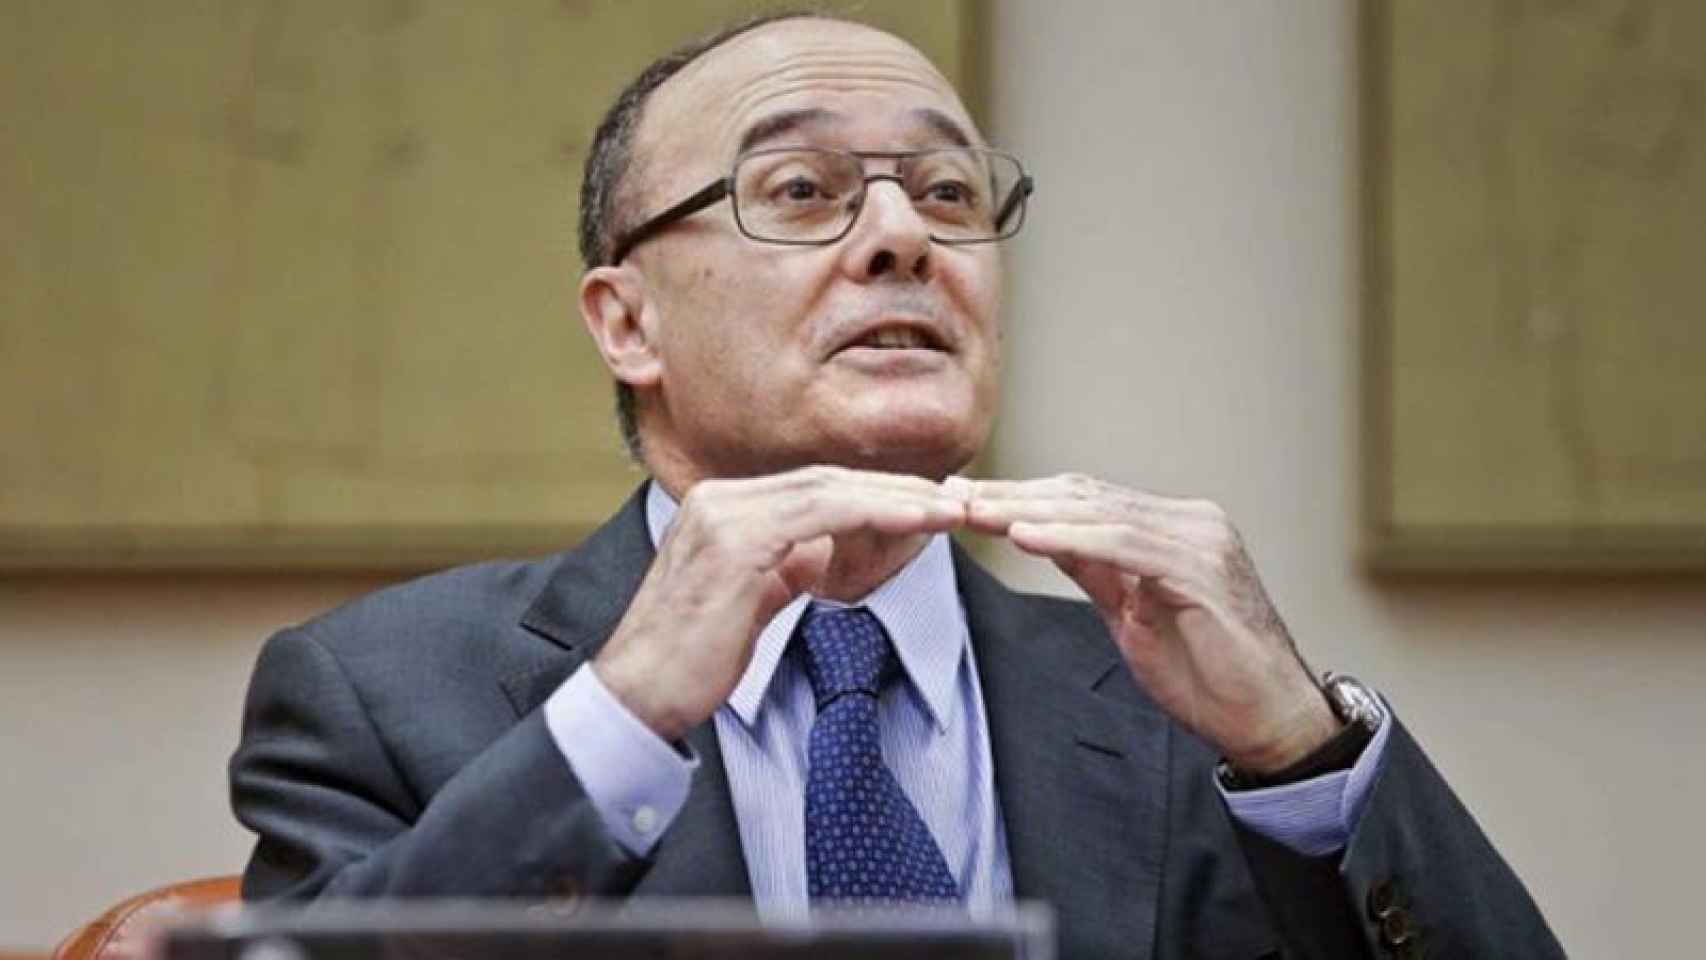 Luis María Linde, gobernador del Banco de España.